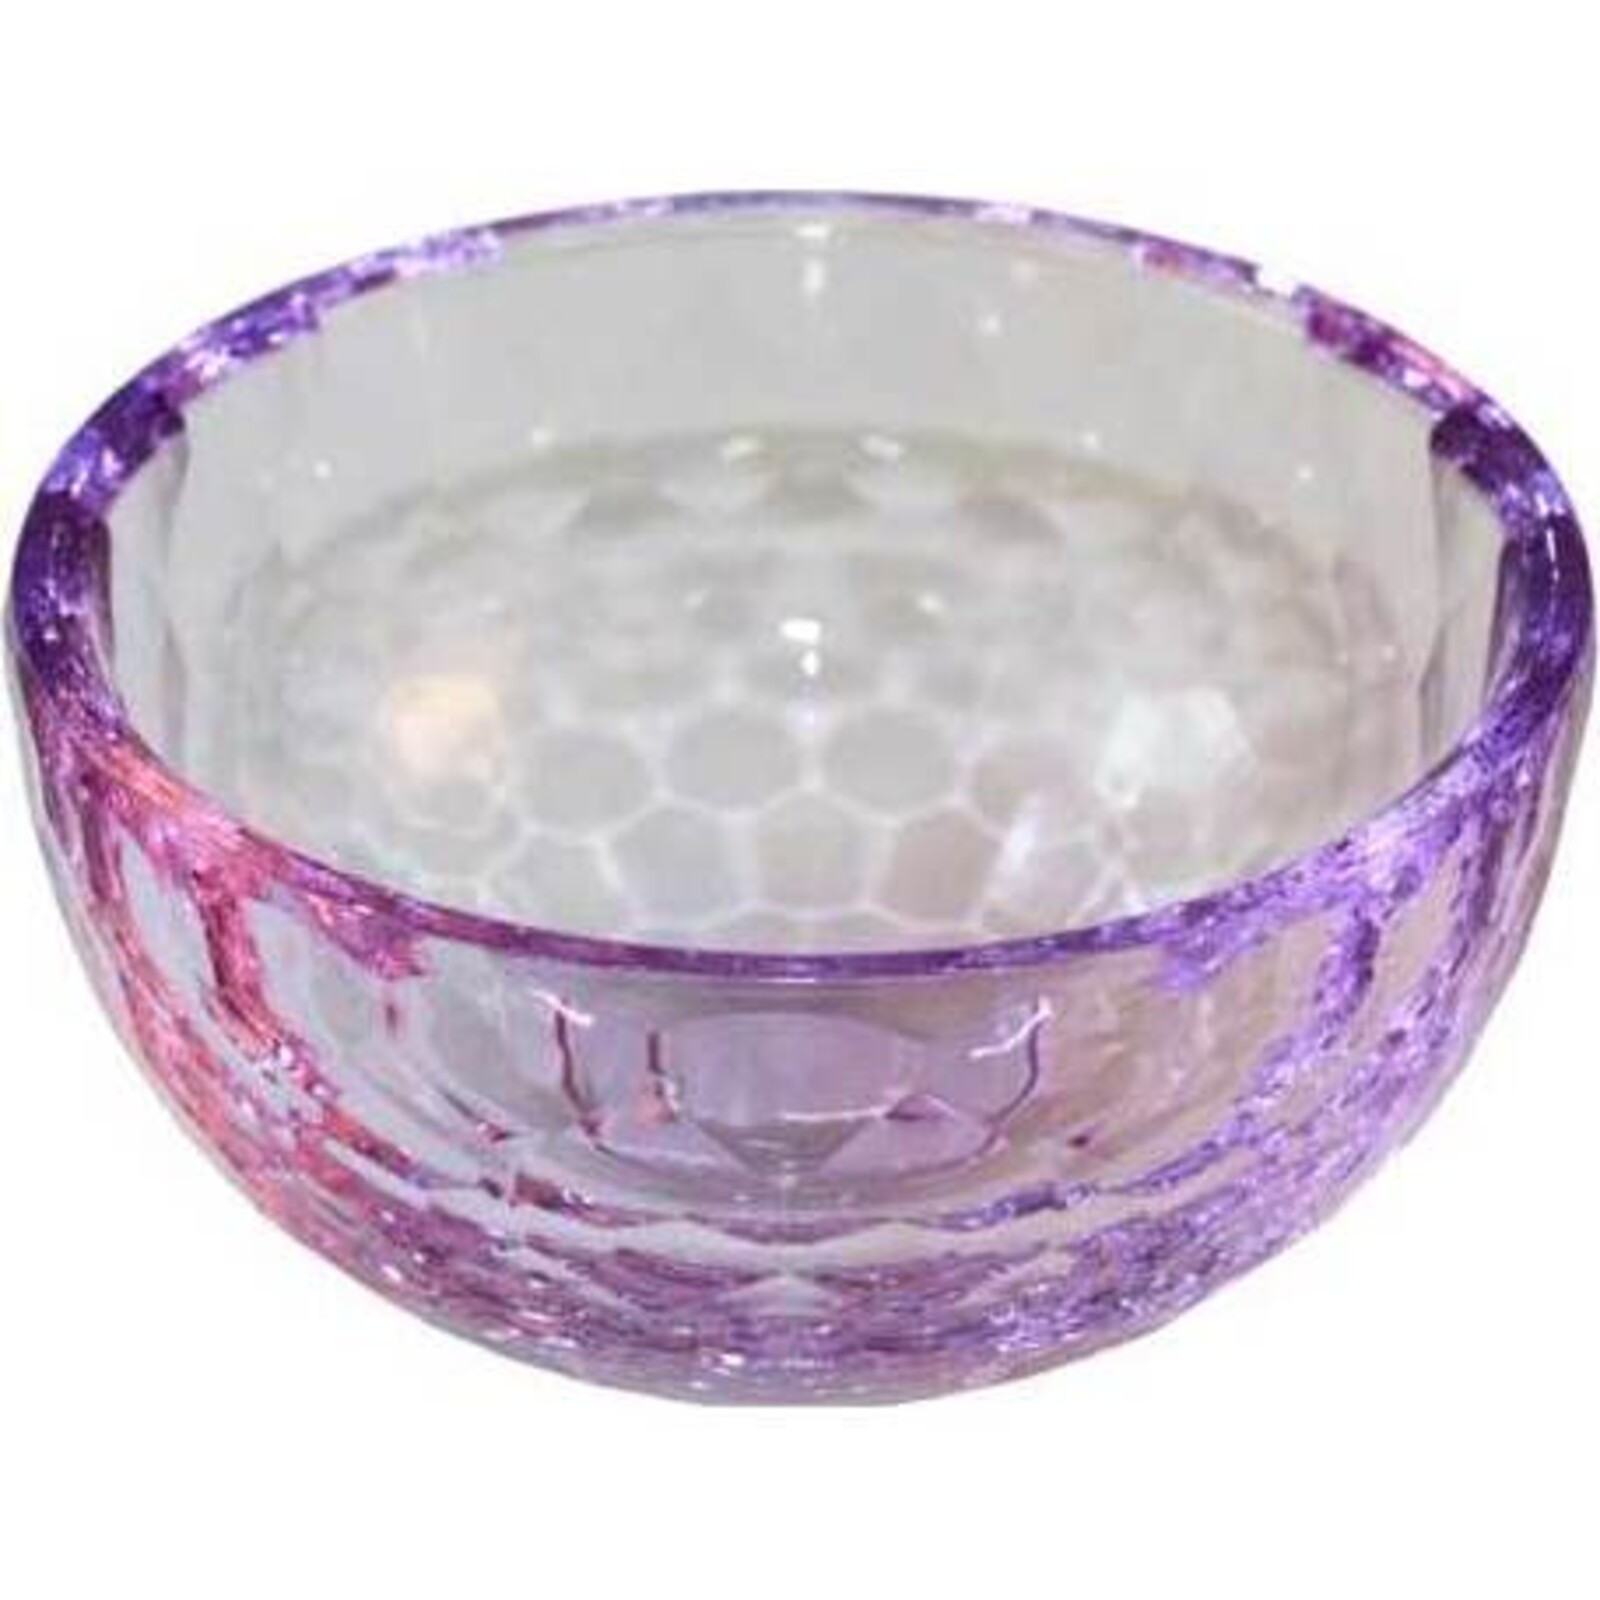 Cristal Bowl Votive - Lilac